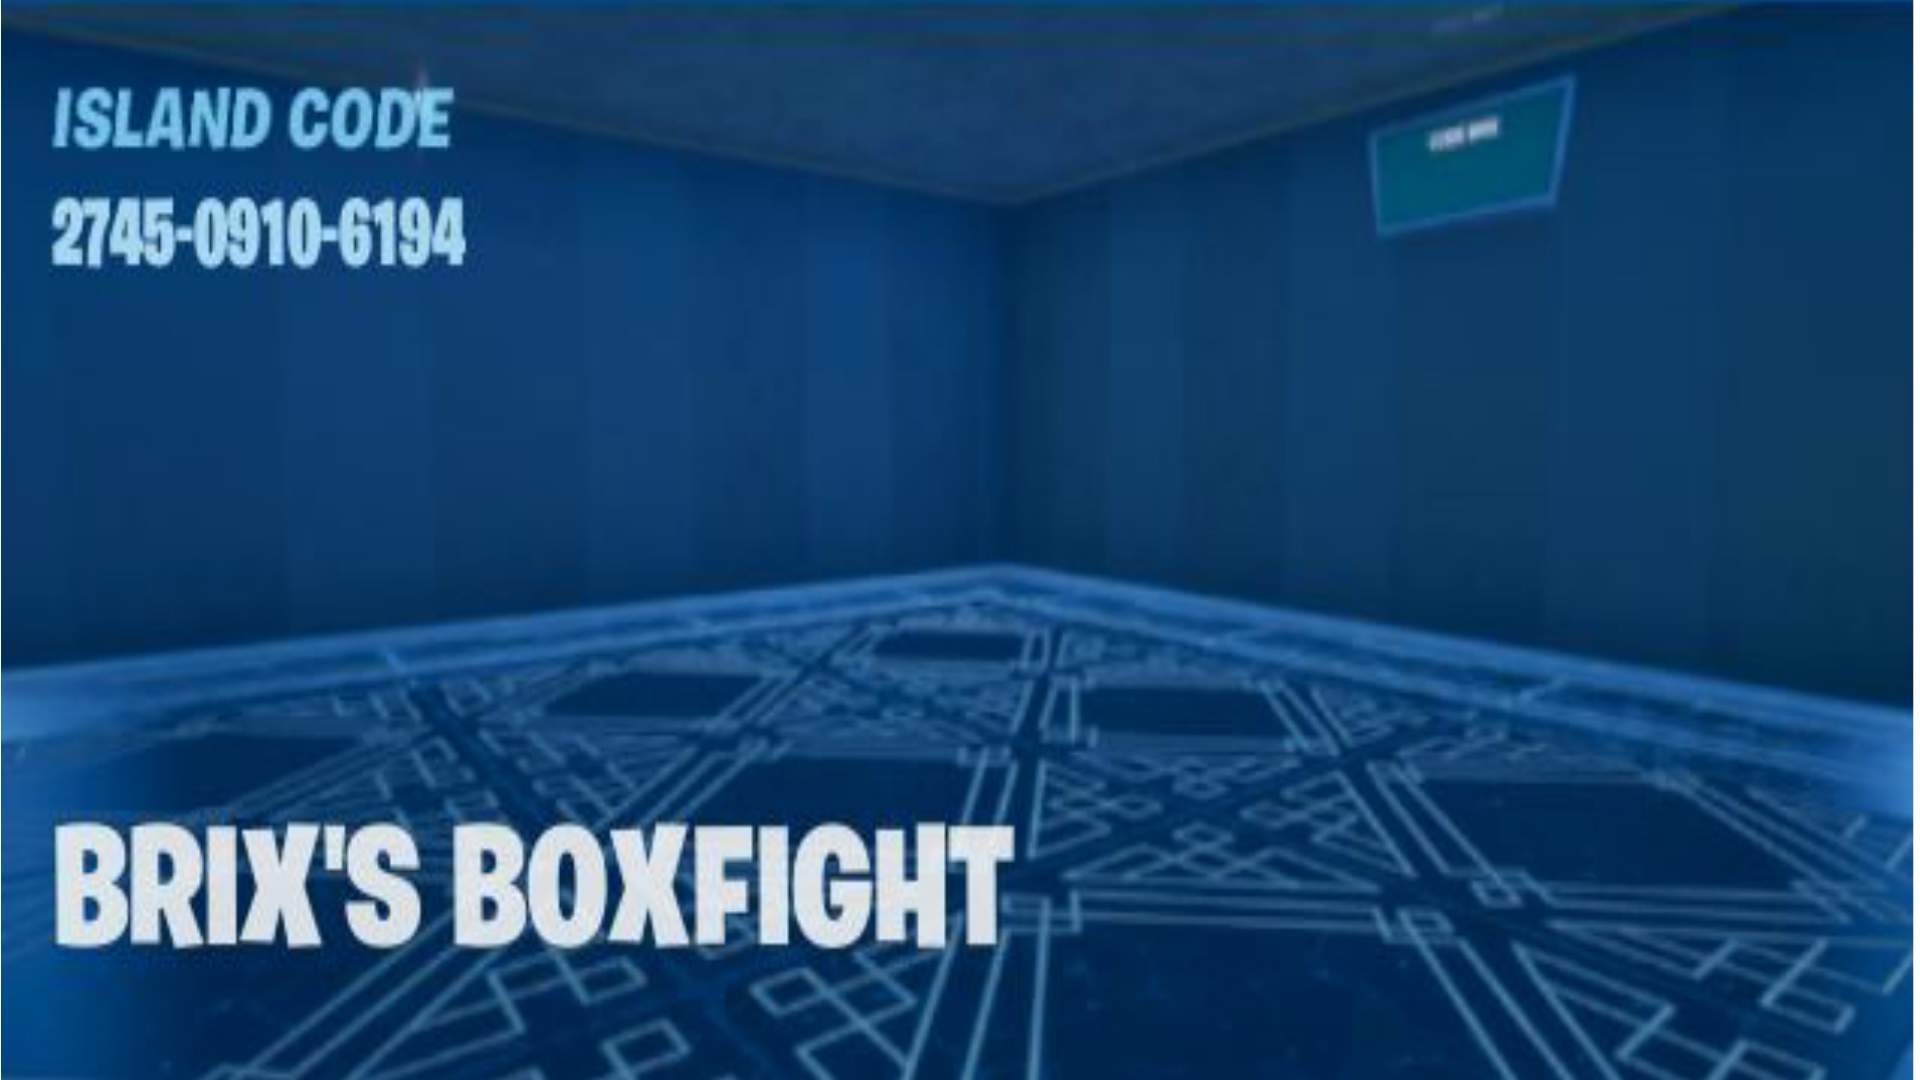 BRIX'S BOXFIGHT Fortnite Creative Map Codes